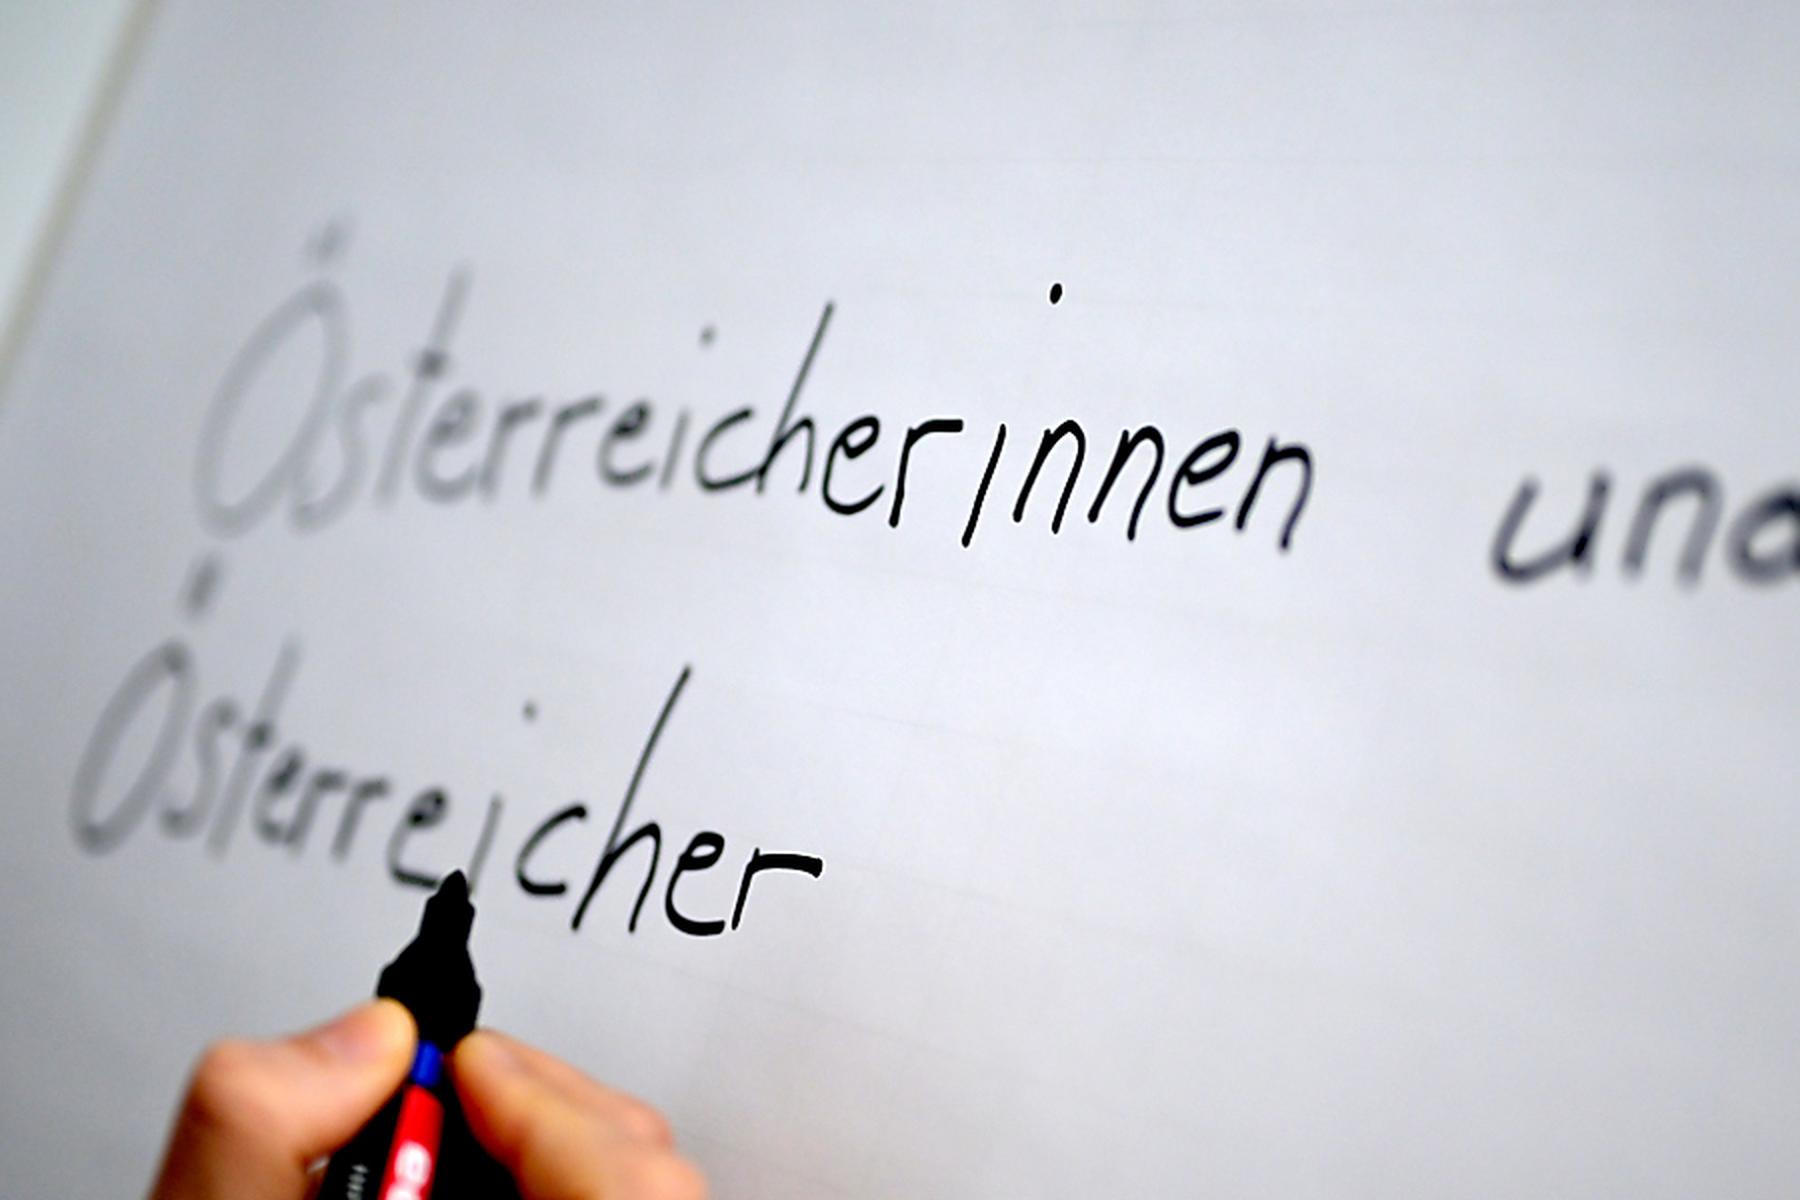 Linz: Zustimmung zum Gendern laut Umfrage rückläufig